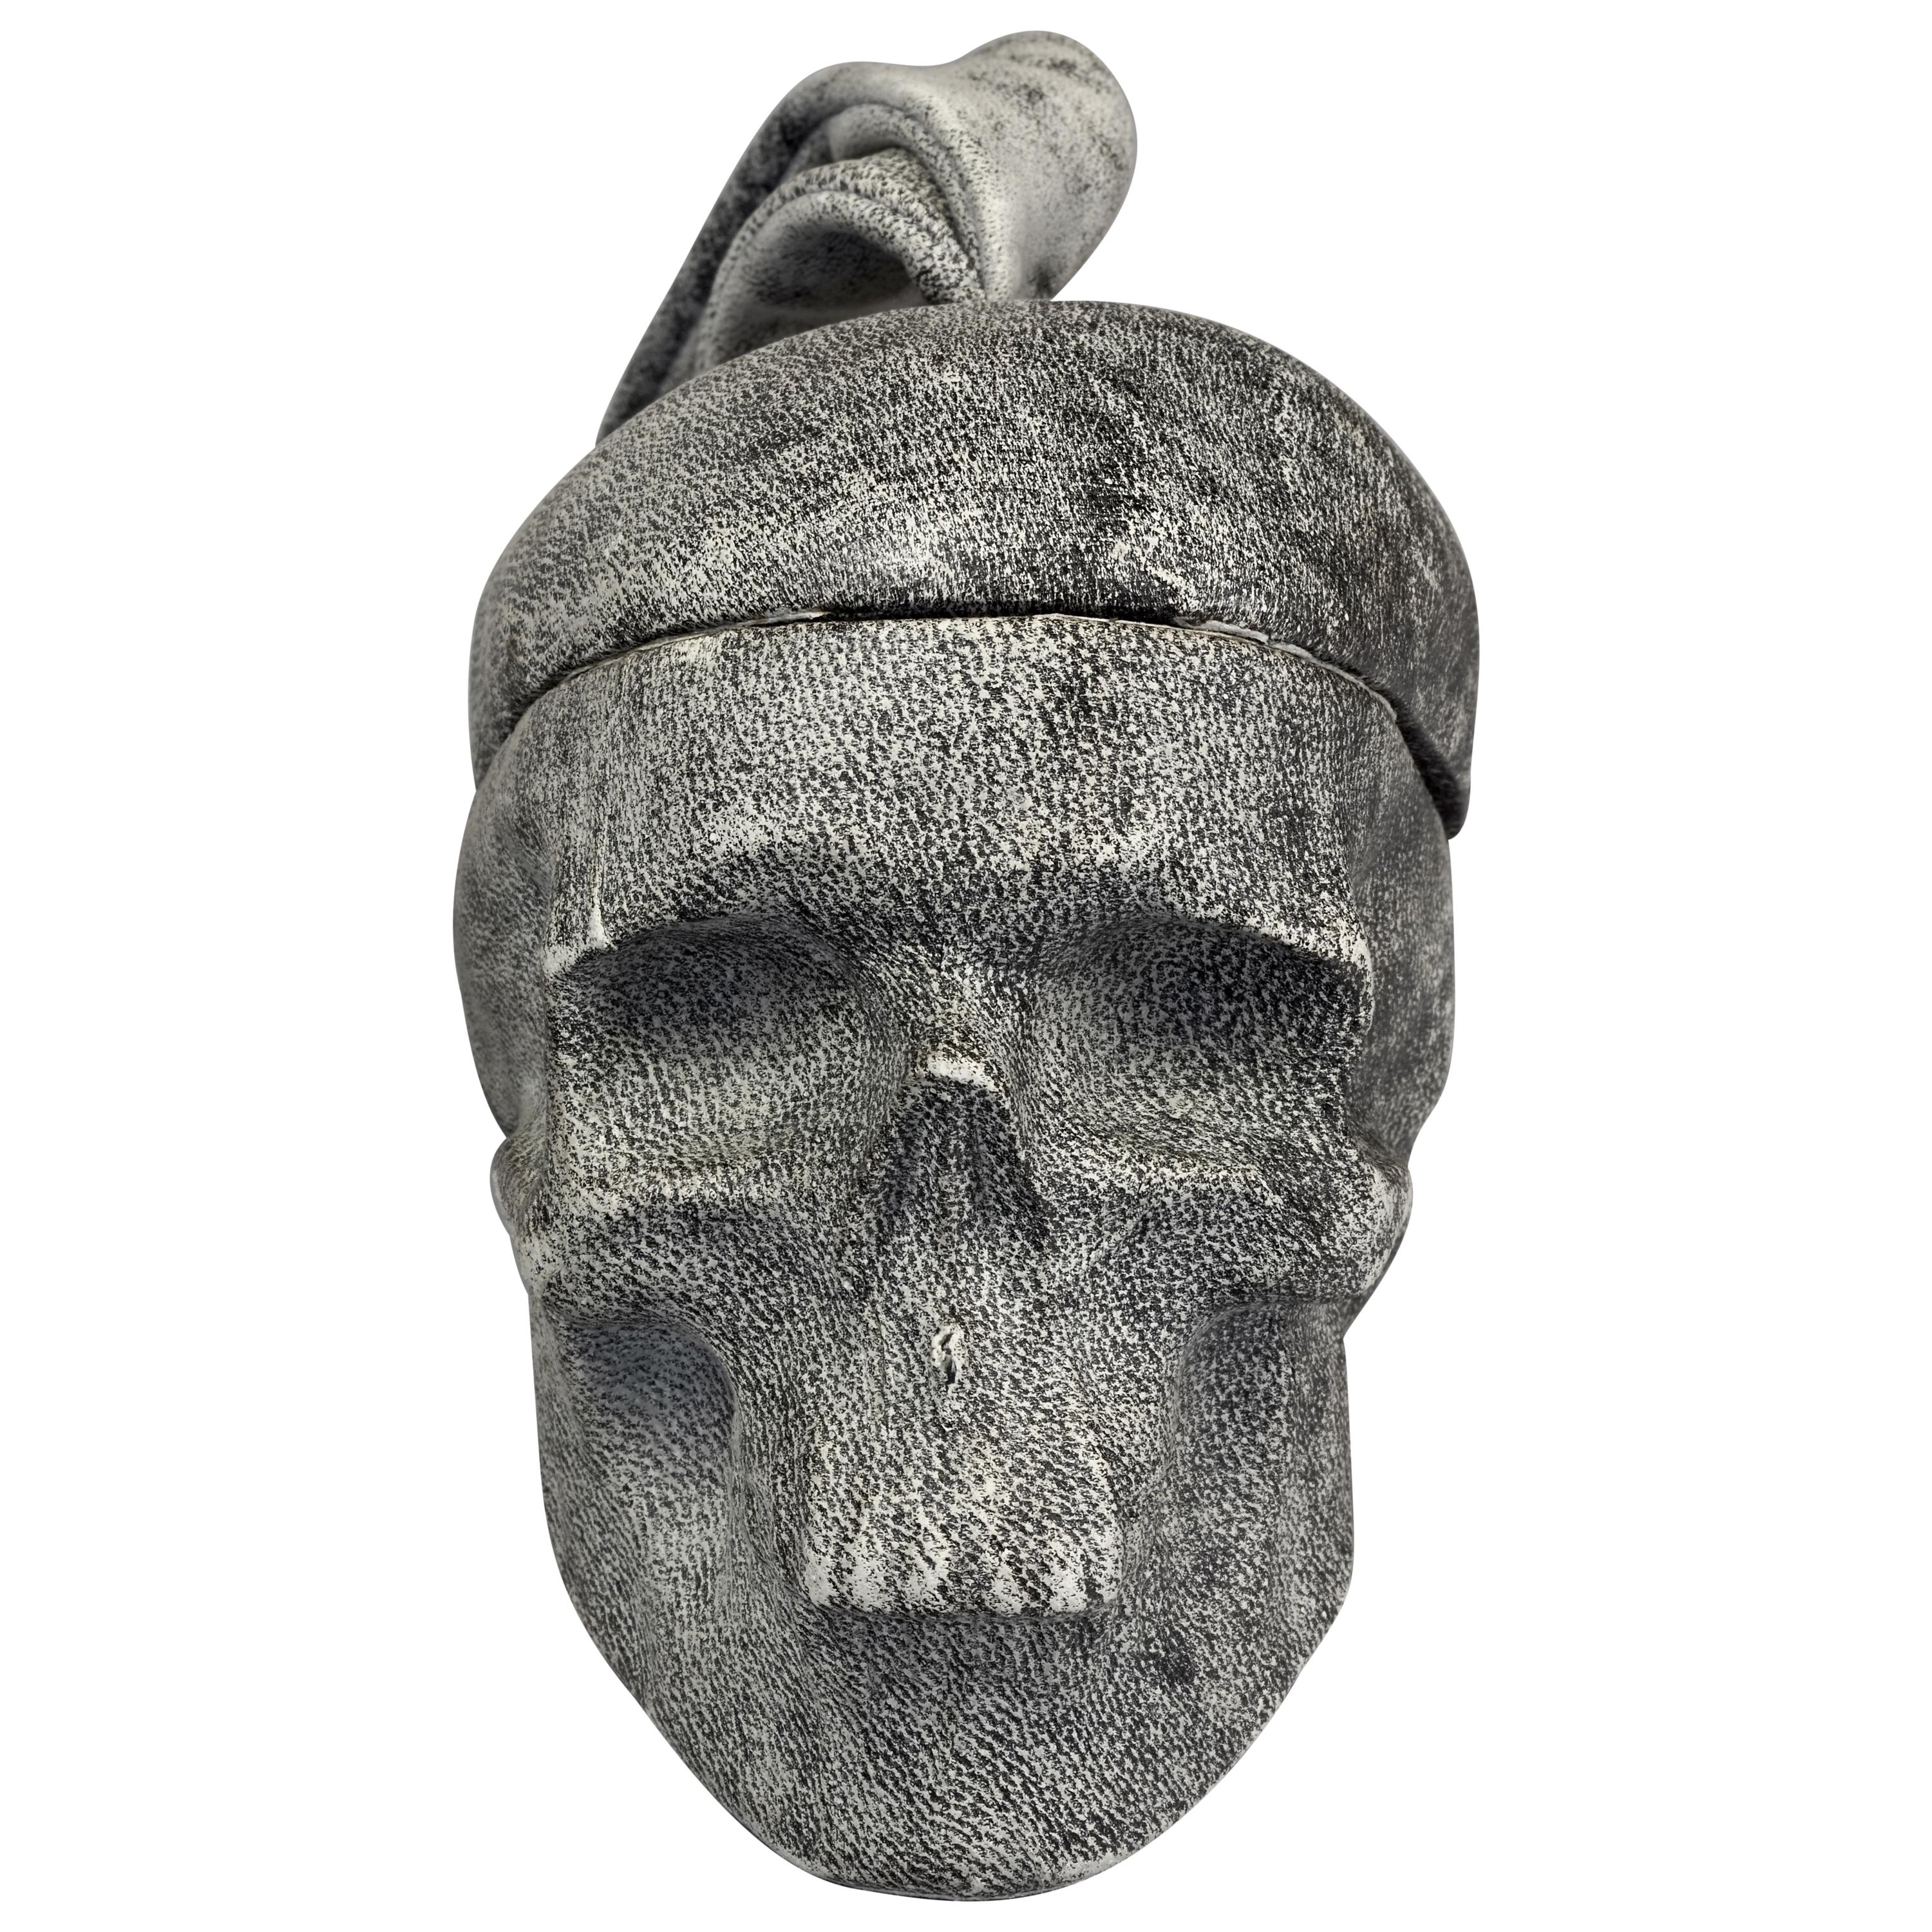 NATALIA BRILLI 2009 Surreal Skull Gothic Wristlet Bag